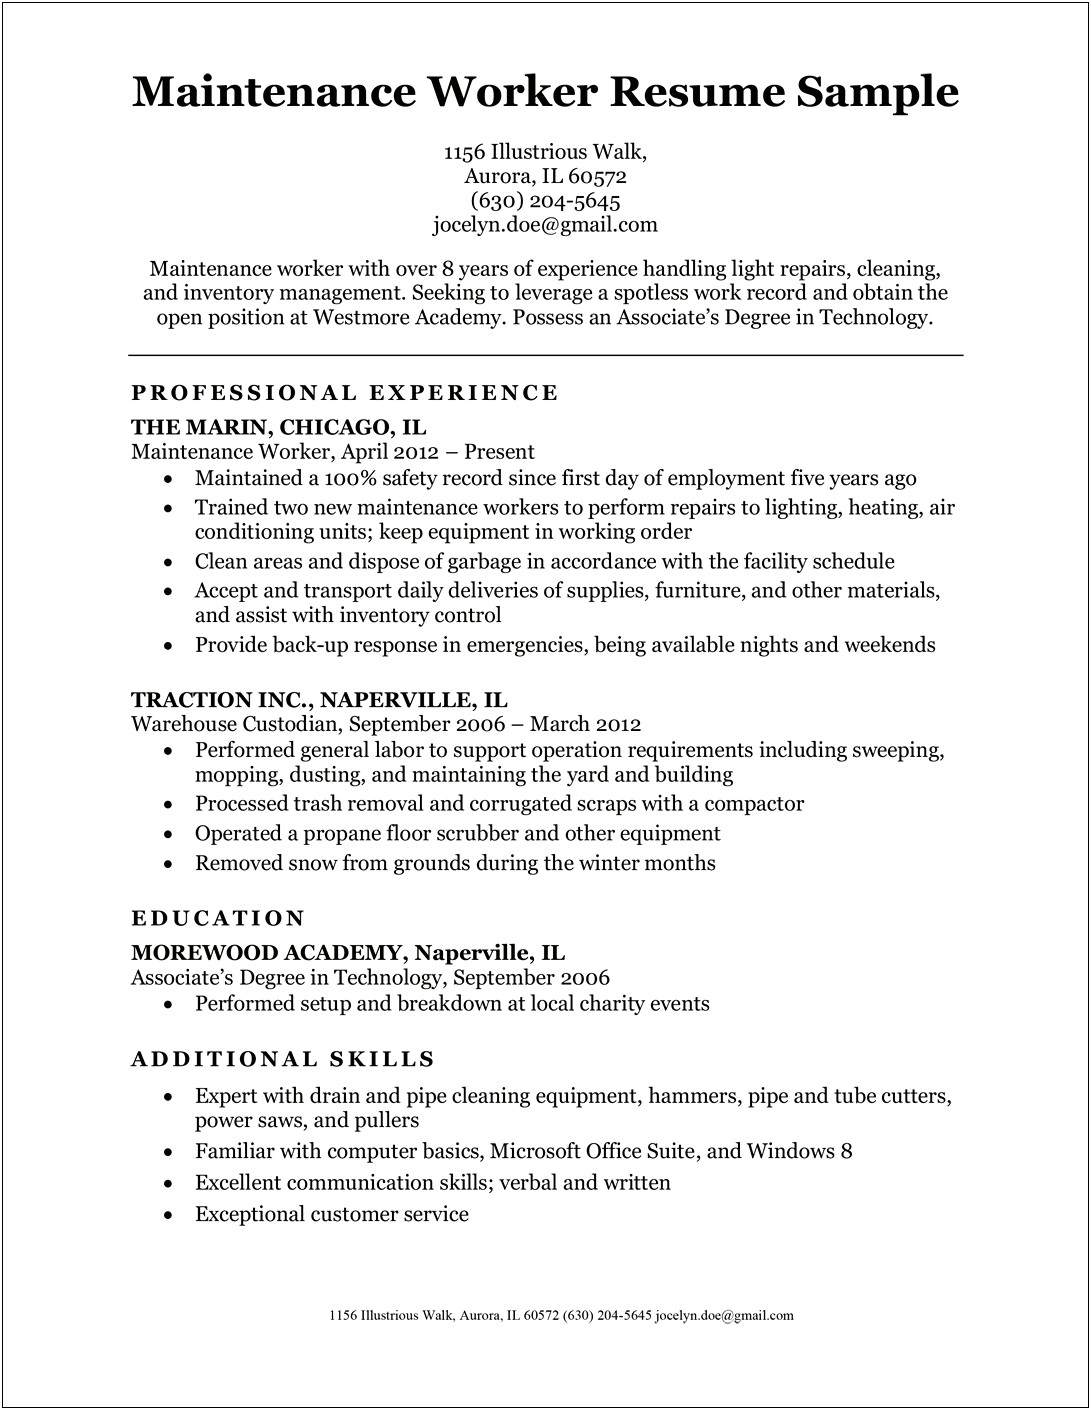 Sample Resume For Associates Degree